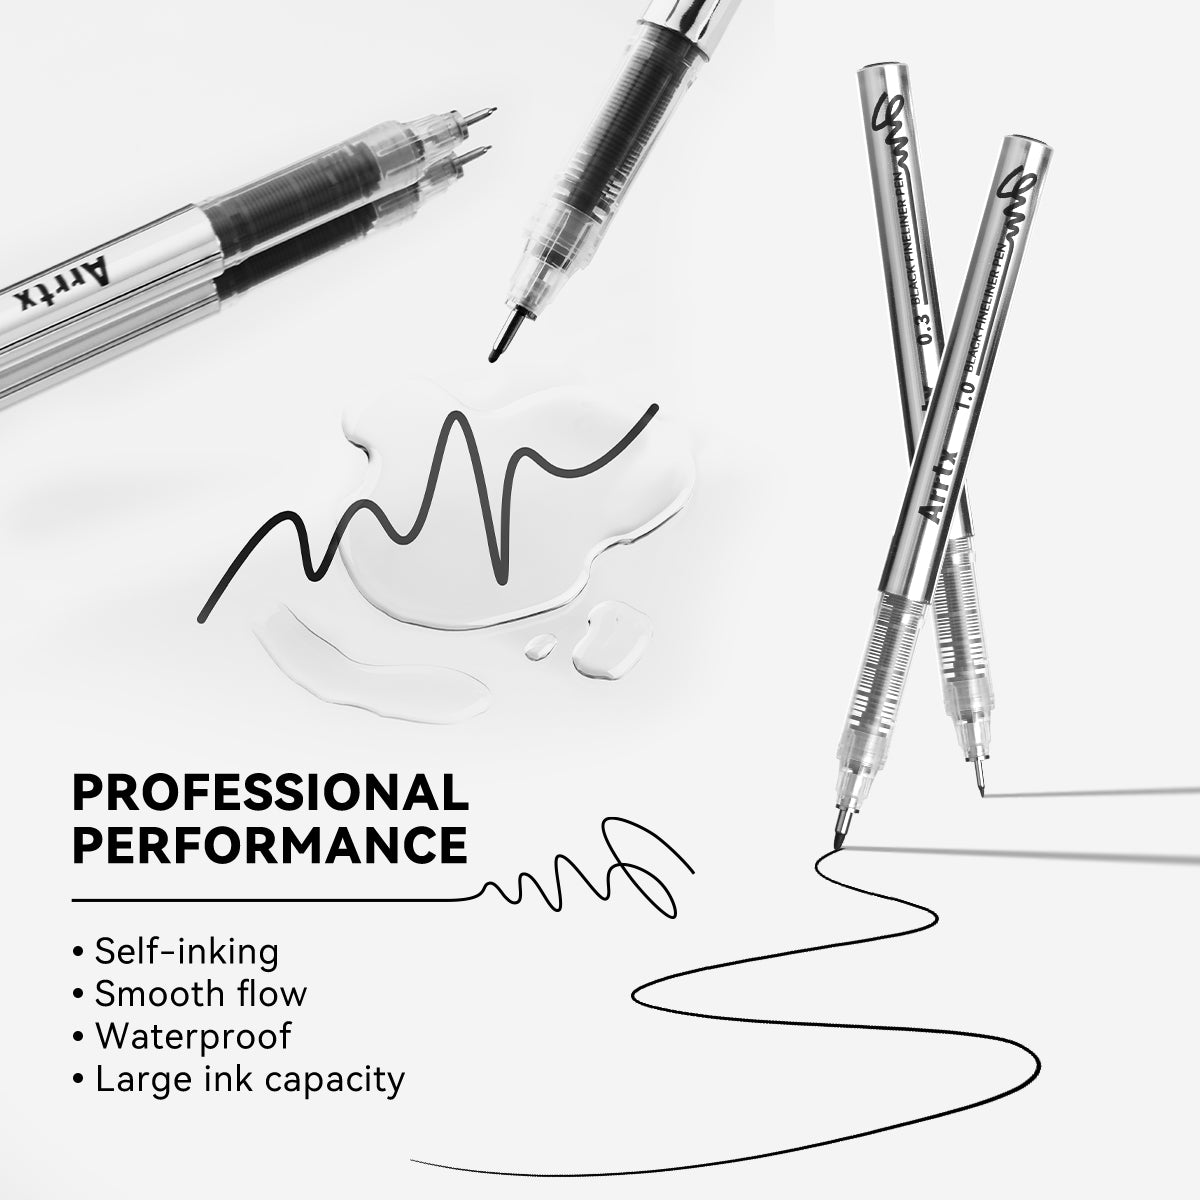 Arrtx Fineliner Pen Set 10 Pack Black Color Gel Pens 10 Nibs